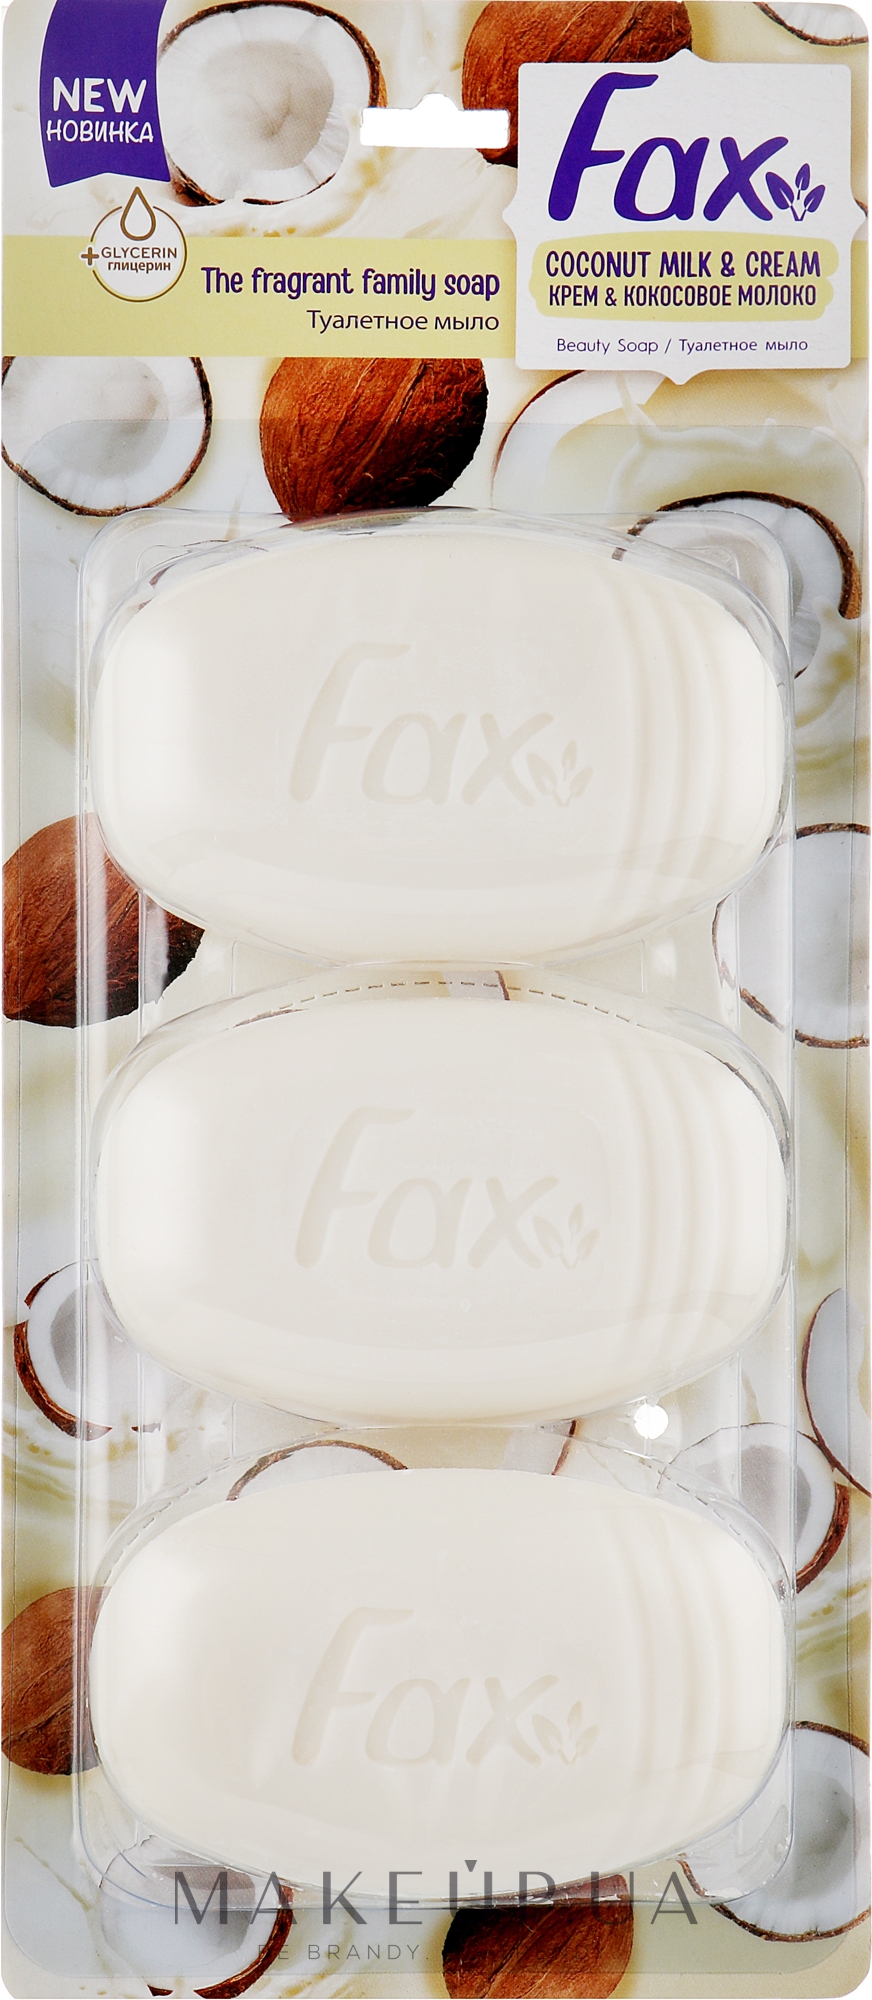 Туалетное мыло "Крем и кокосовое молоко", 3 шт. - Fax Coconut Milk & Cream Beauty Soap — фото 3x100g